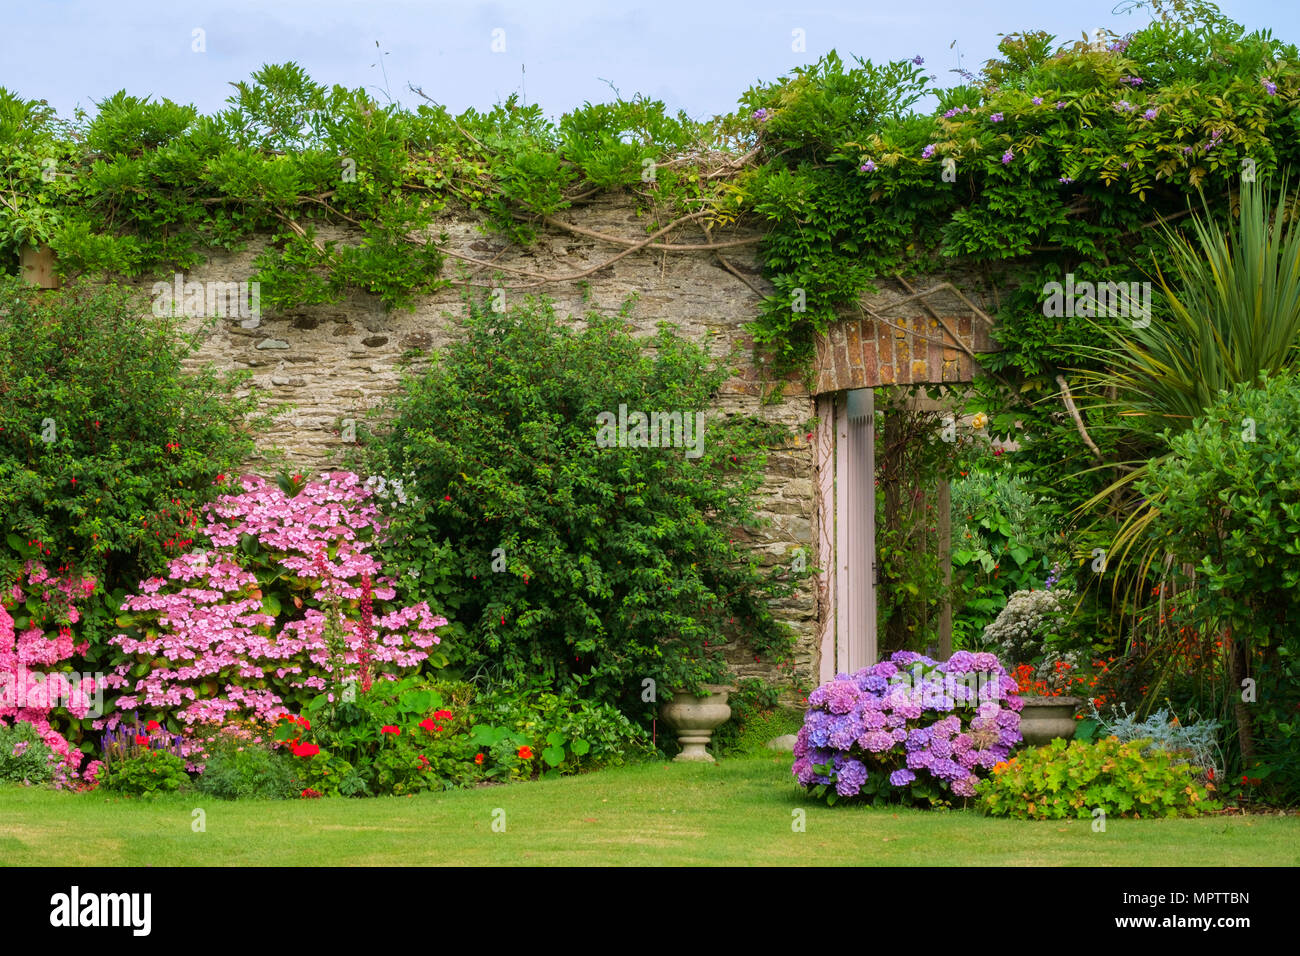 Giardini del Regno Unito. Una bella estate giardino murato aiuola di confine display comprendente vari ortensie. Una porta aperta mostra uno scorcio di un walled garden vegetali al di là. Foto Stock